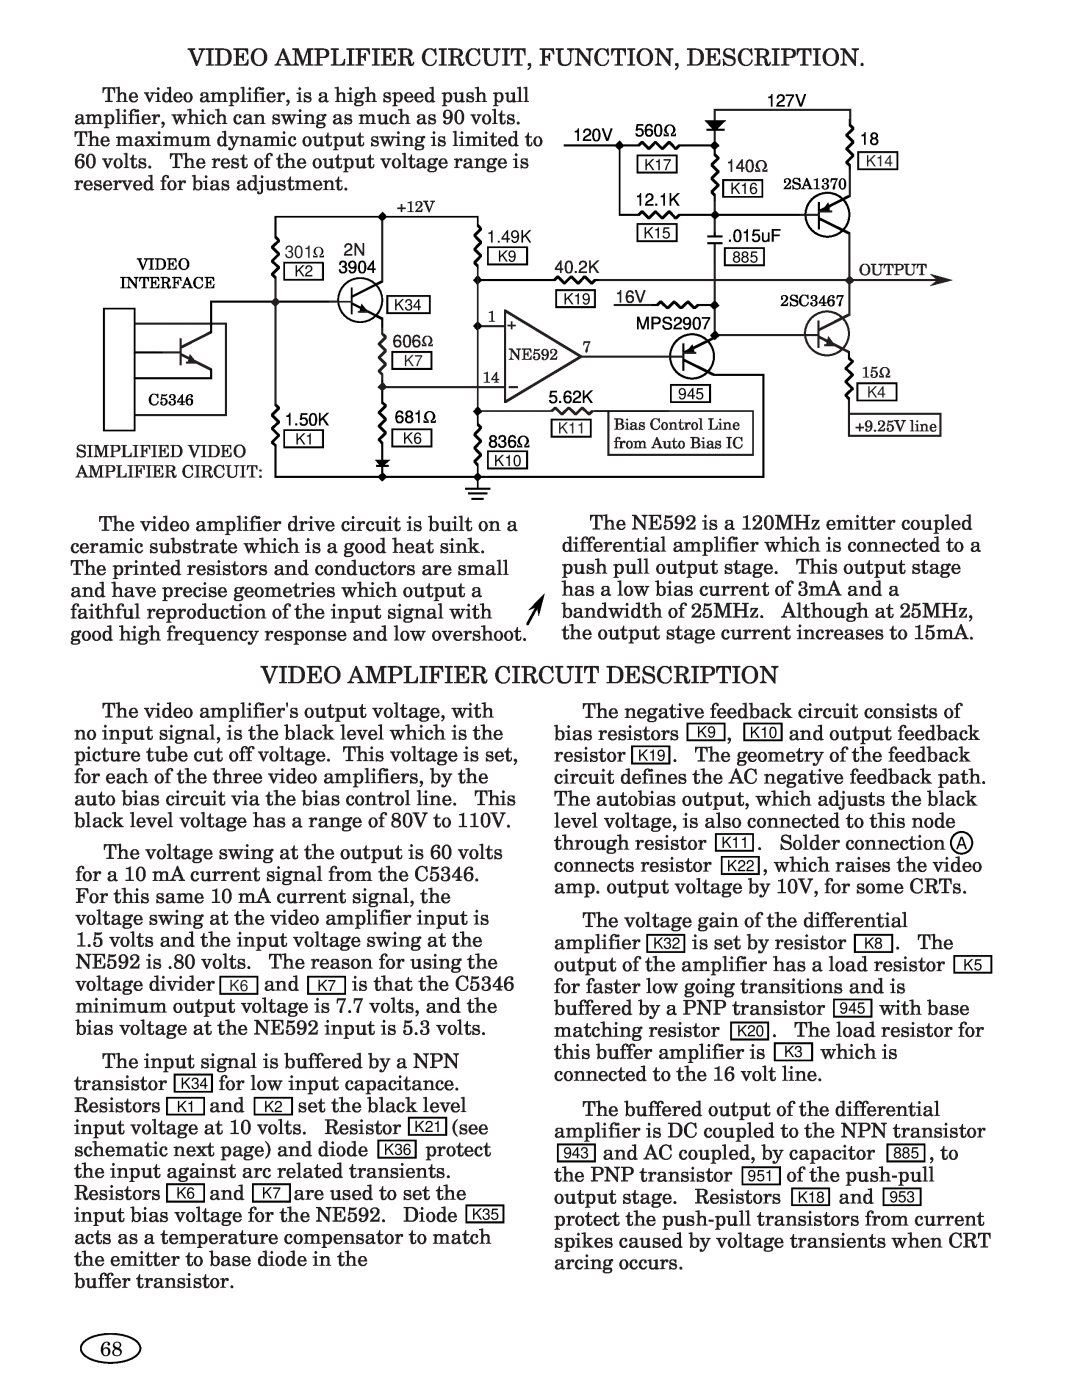 Genius 3693 Video Amplifier Circuit, Function, Description, Video Amplifier Circuit Description, 127V, 120V, 560Ω, 12.1K 